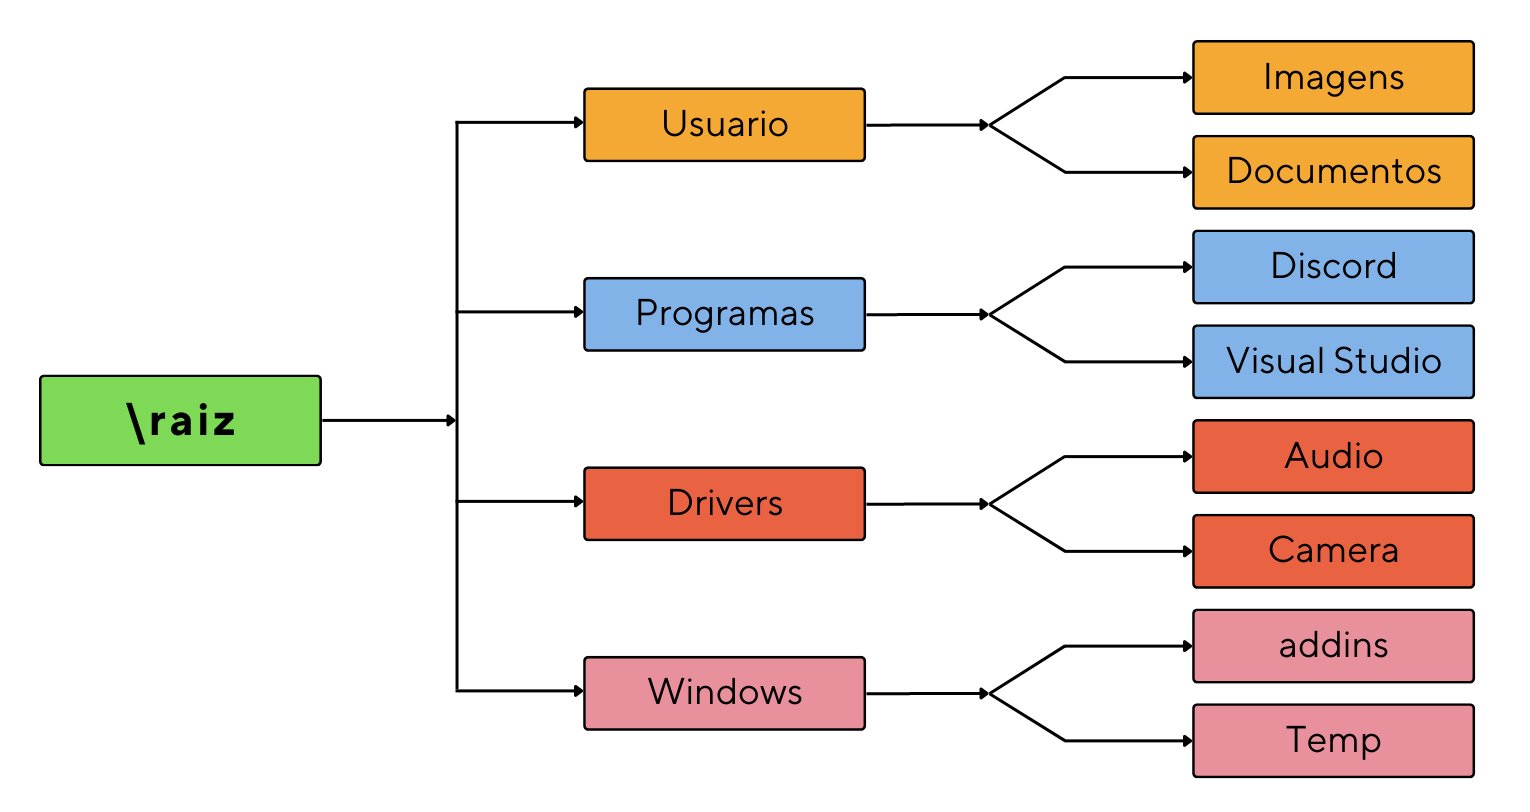 Representação da árvore de diretórios e sua hierarquia. O diretório raiz contém os diretórios irmãos: “Usuario”, “Programas”, “Drivers”e “Windows”. A pasta “Usuario” tem em seu interior os diretórios “Imagens” e “Documentos”; A “Programas”, possui “Discord” e “Visual Studio”; A “Drivers”, apresenta “Audio” e “Camera”, e o diretório “Windows”, tem em seu interior as pastas “addins” e “Temp”.